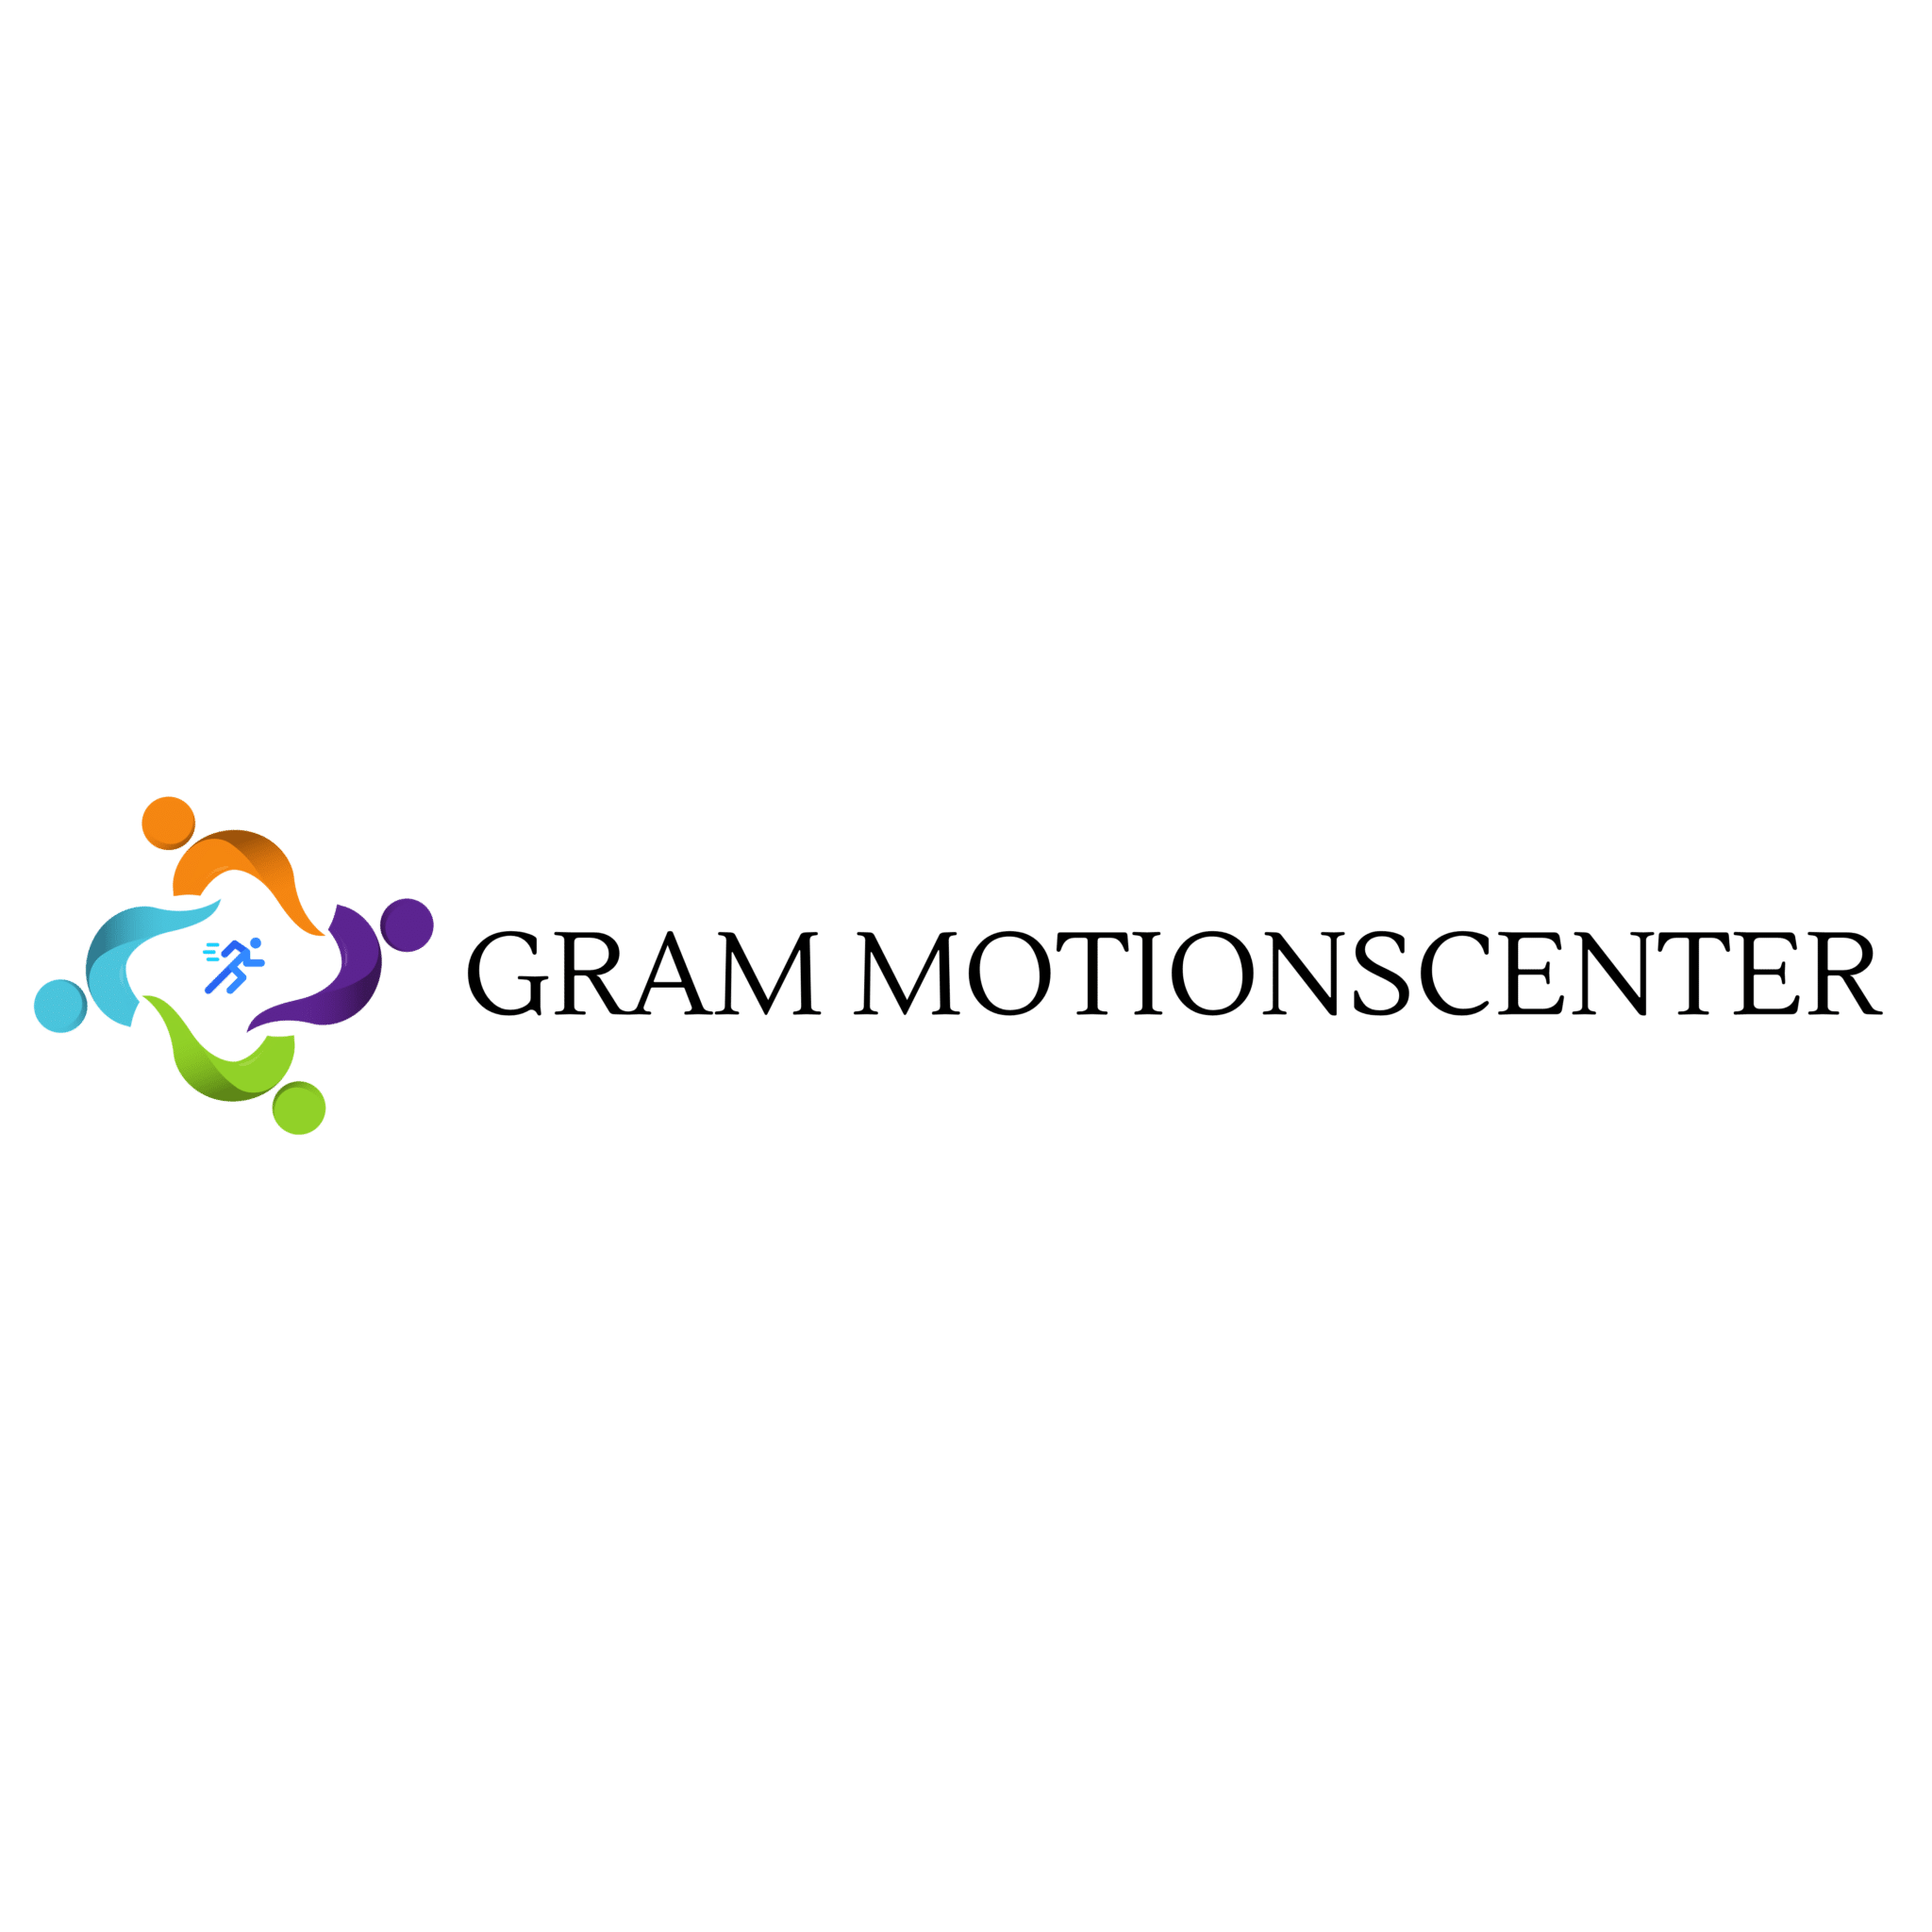 Gram Motionscenter